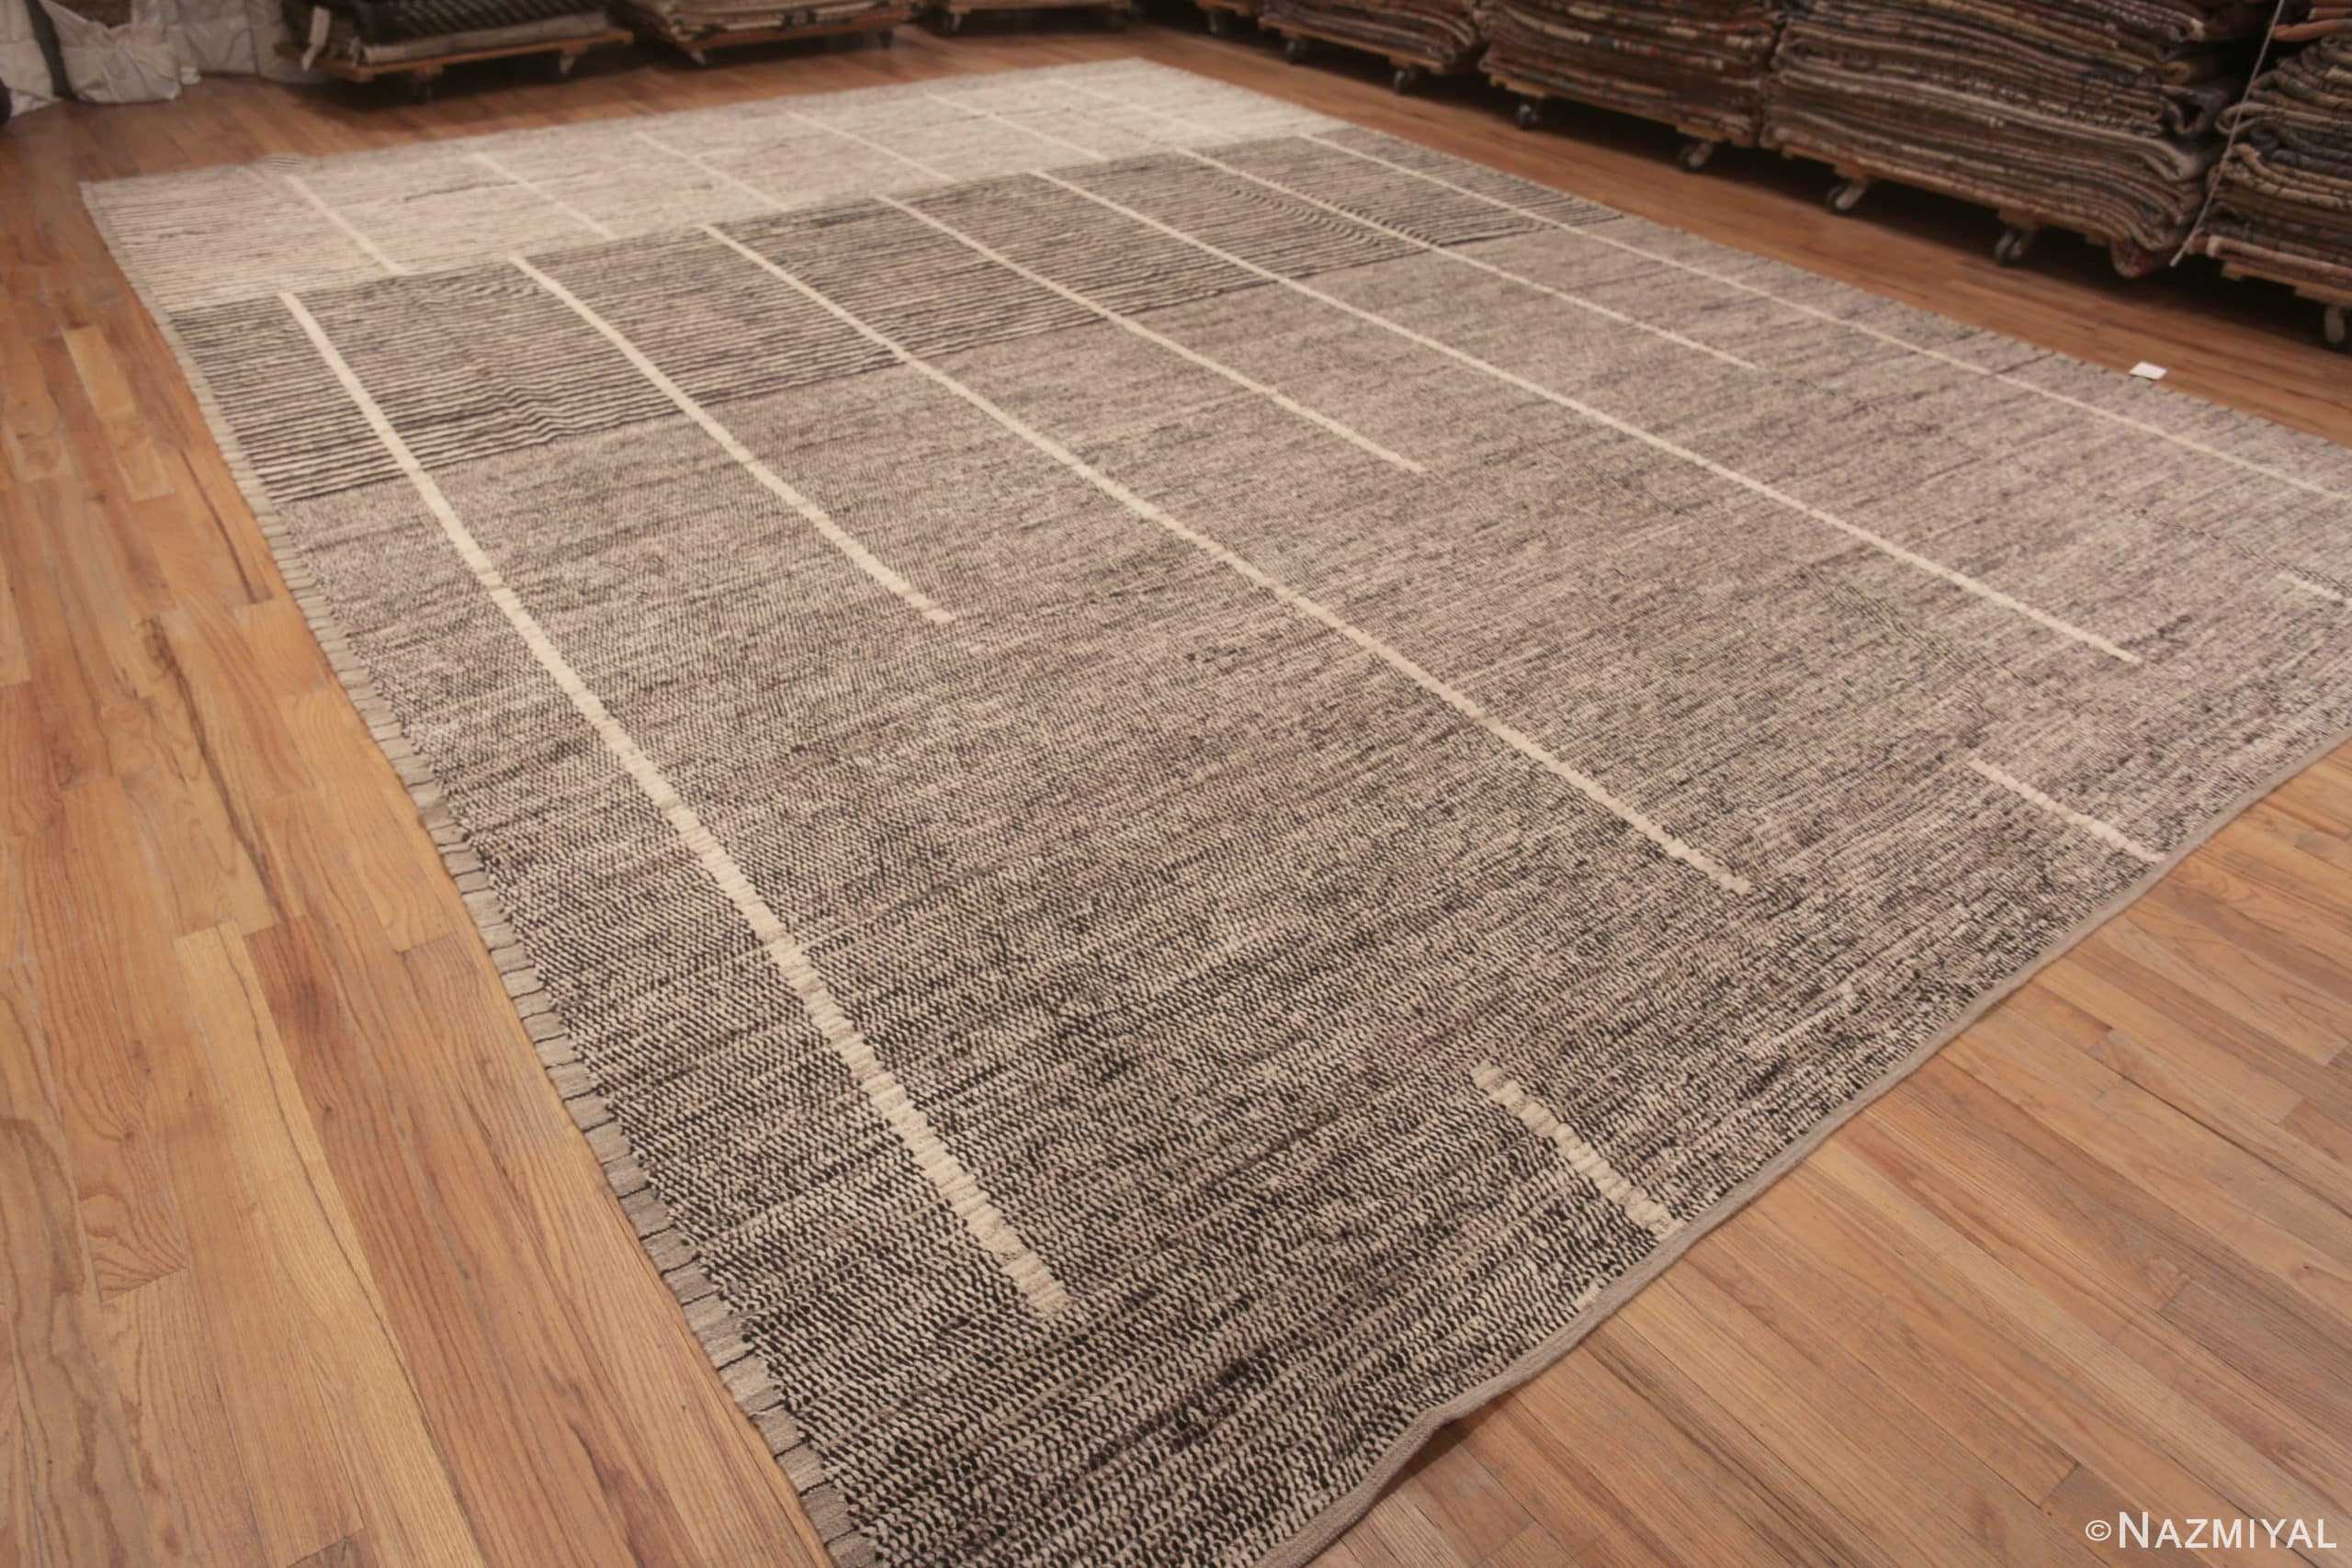 Grey Tiles Floor Mat, Large Vinyl Floor Mat, Vinyl Area Rug